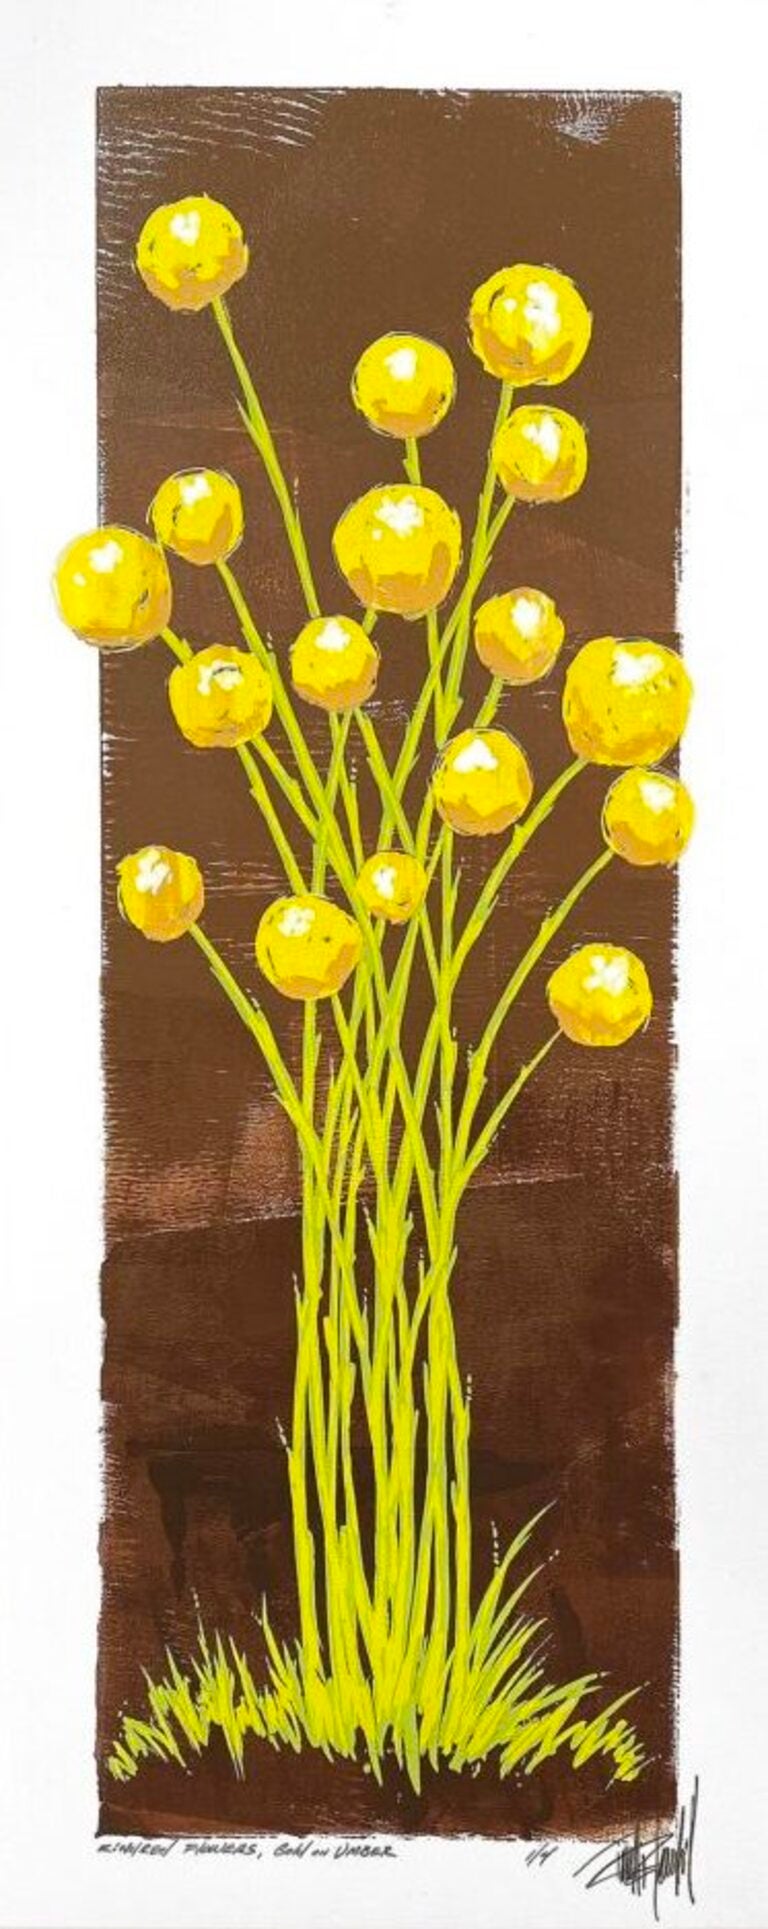 Kindred-Blumen, Gold auf Umber (2/4) – Print von Terrell Thornhill 